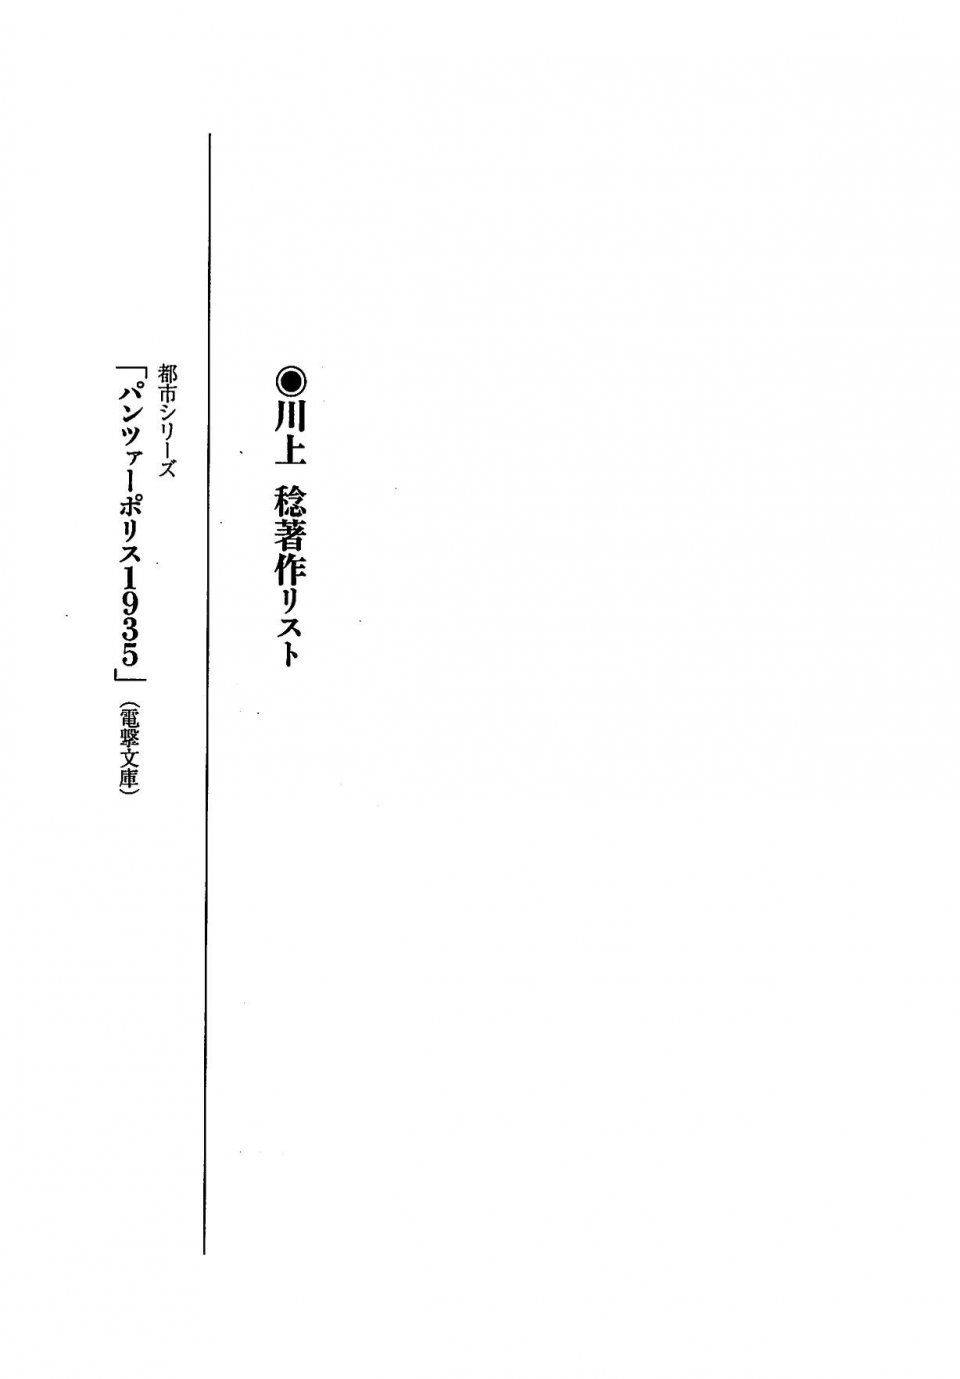 Kyoukai Senjou no Horizon LN Vol 19(8A) - Photo #738